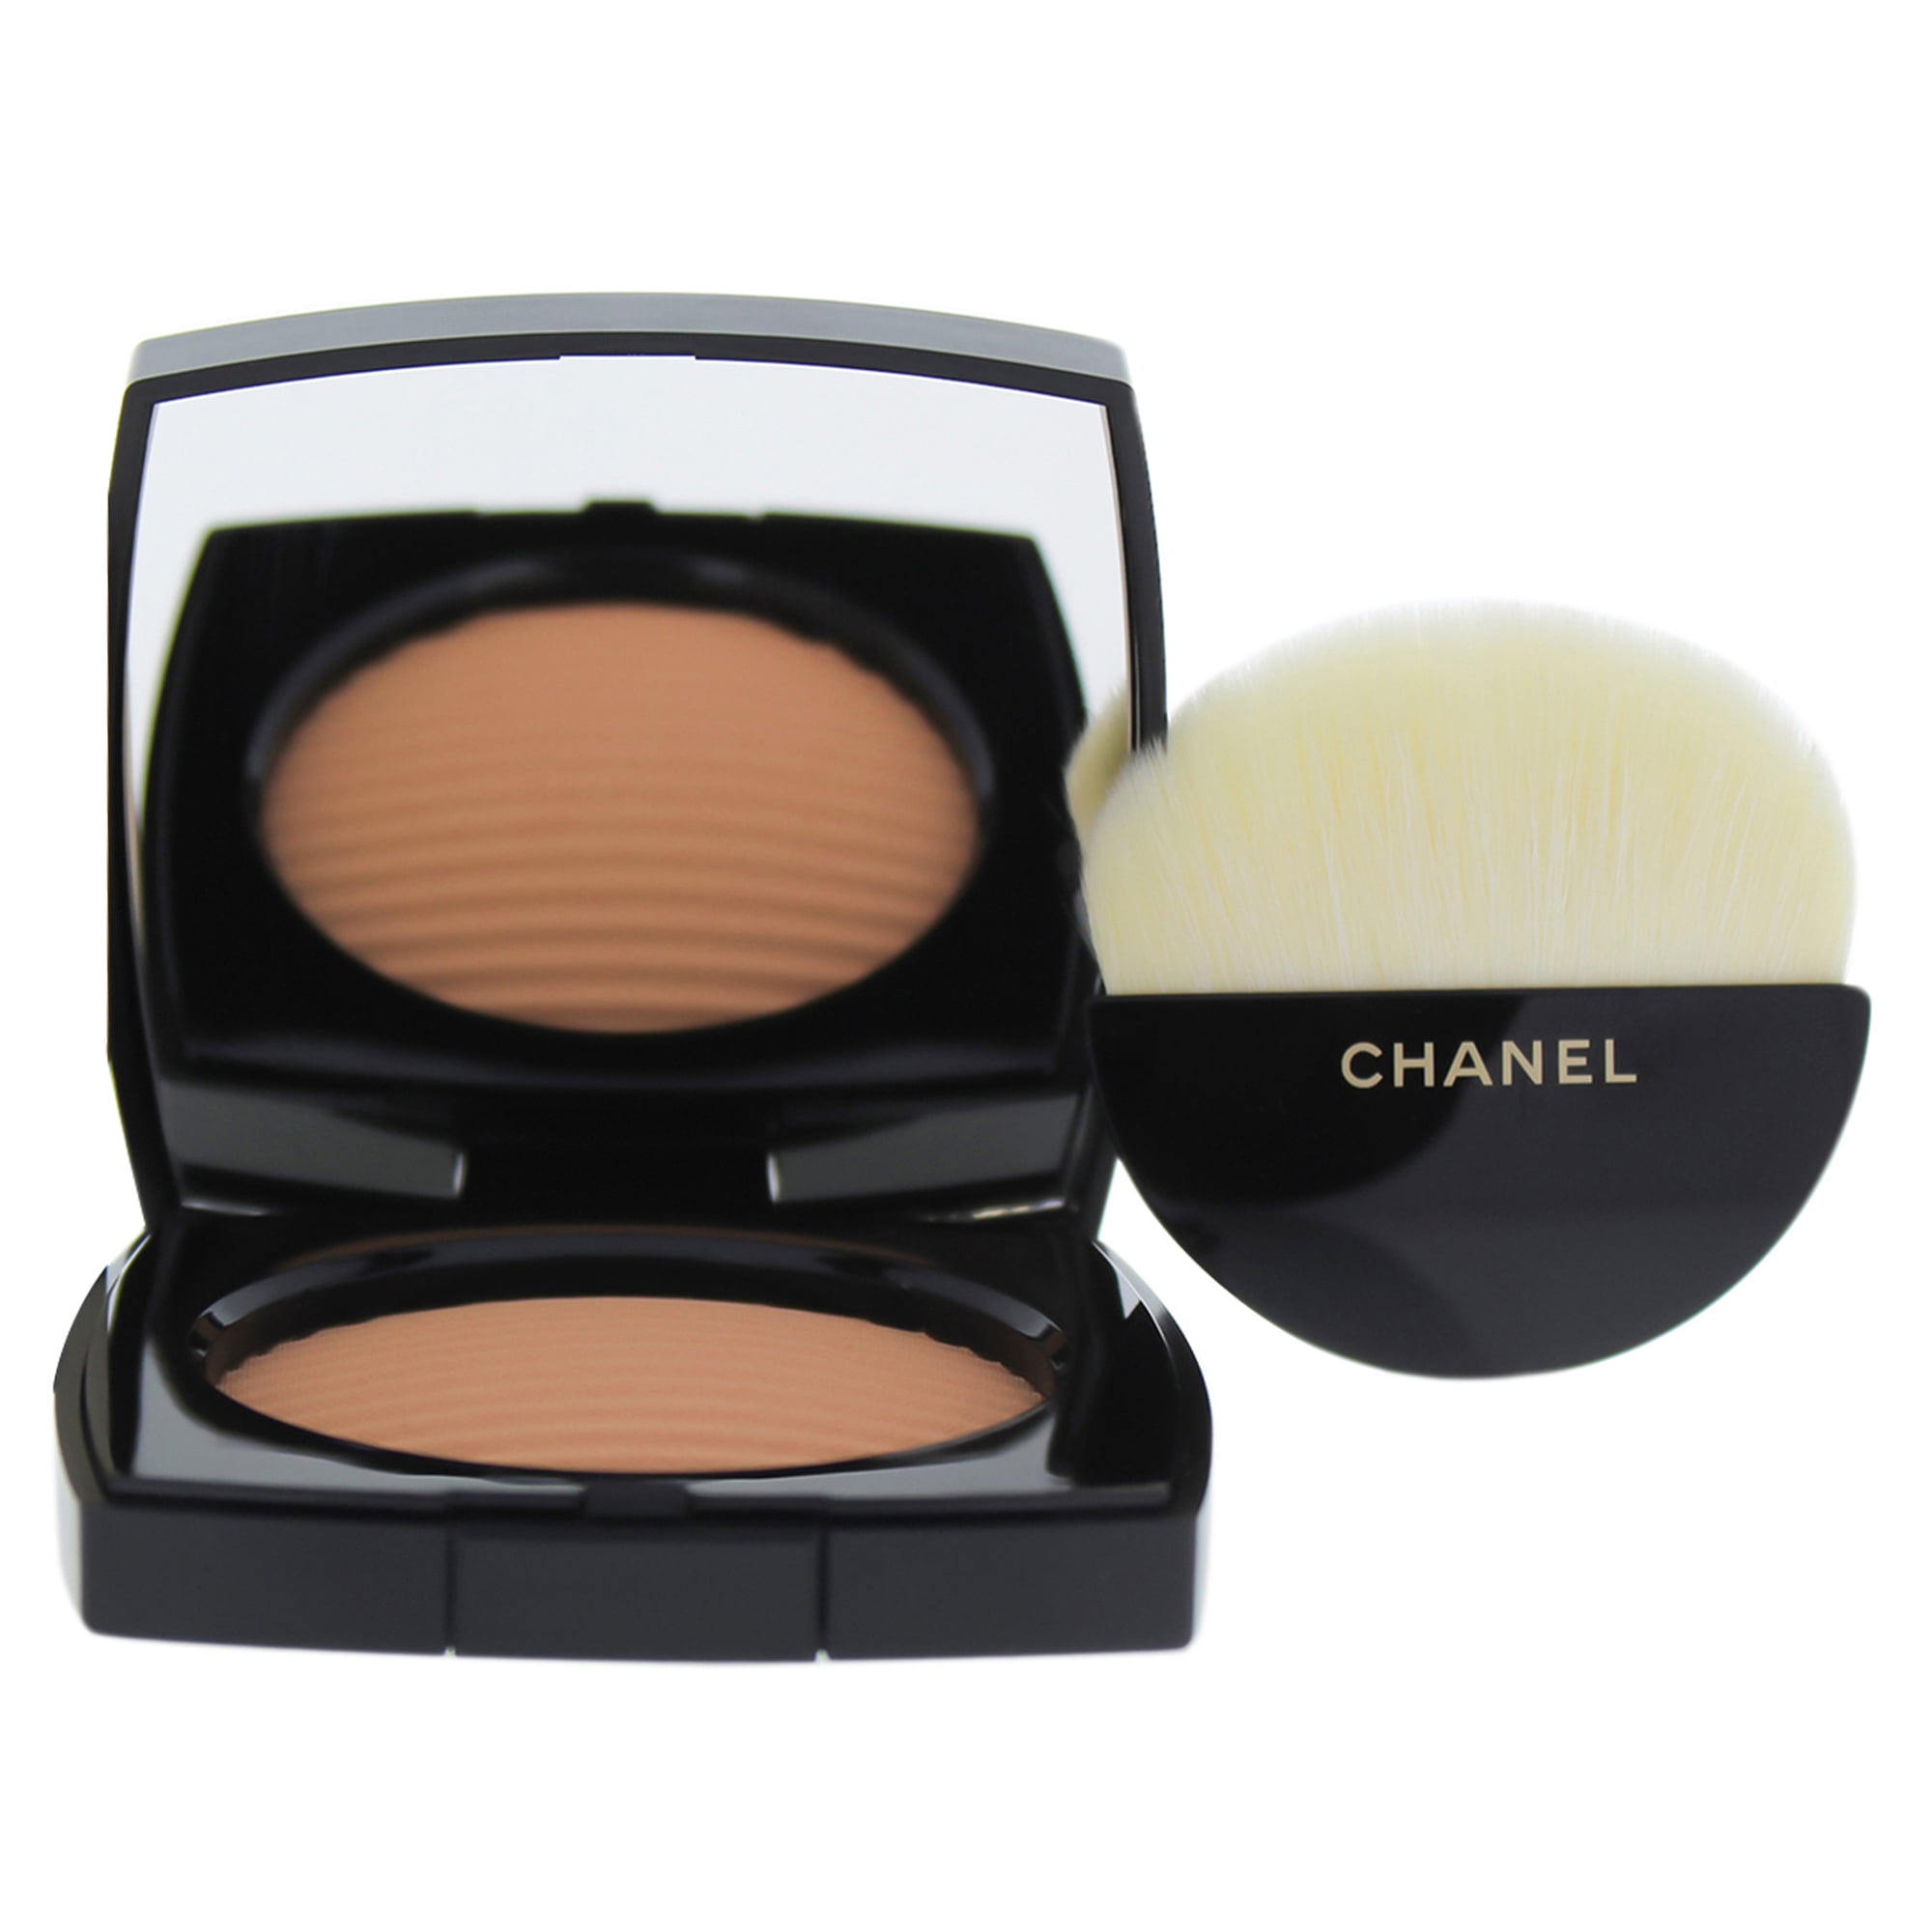 Chanel Les Beiges Healthy Glow Luminous Colour - # Medium Deep 12g